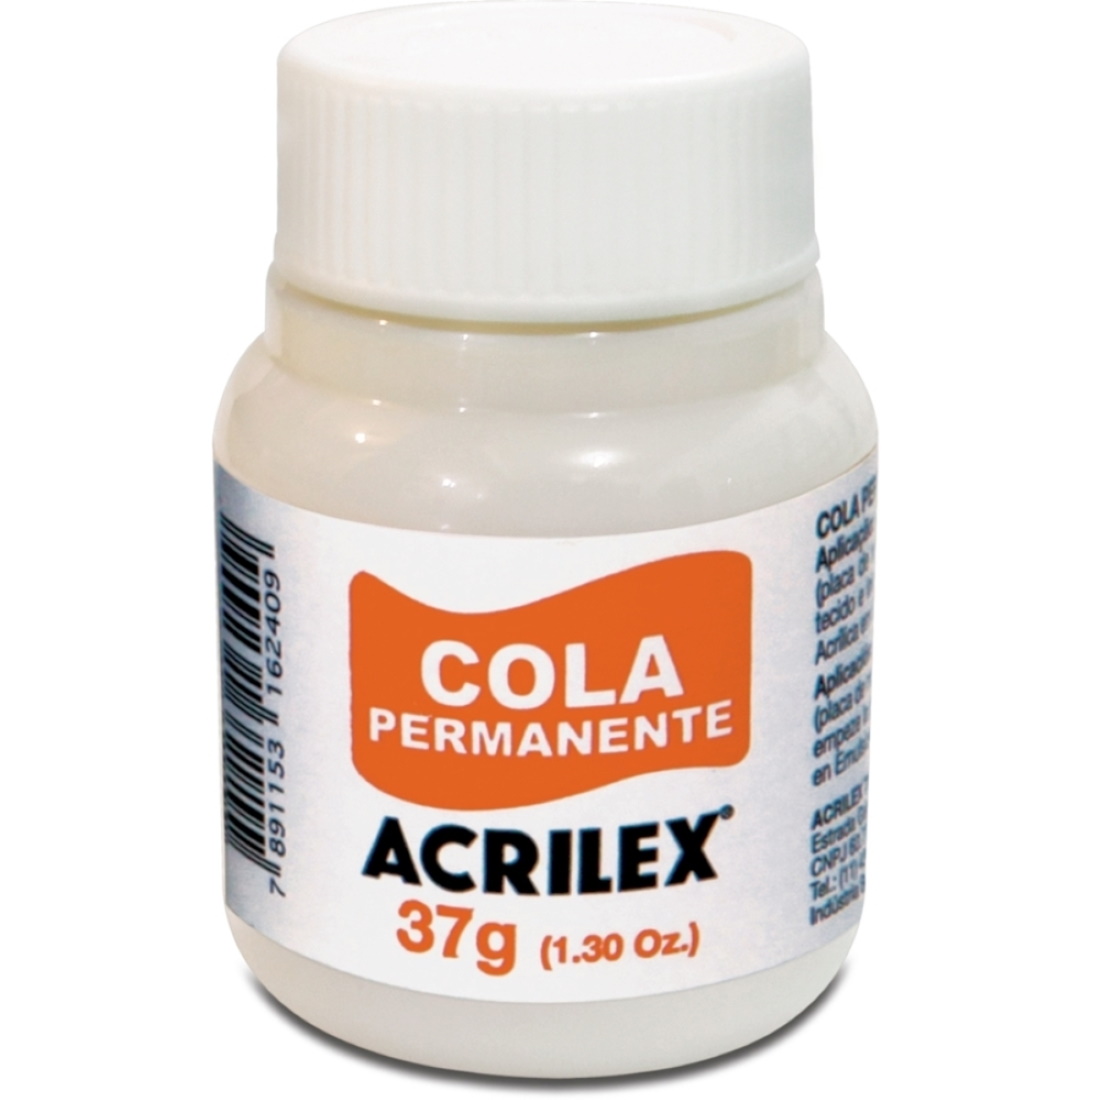 Cola Permanente Acrilex